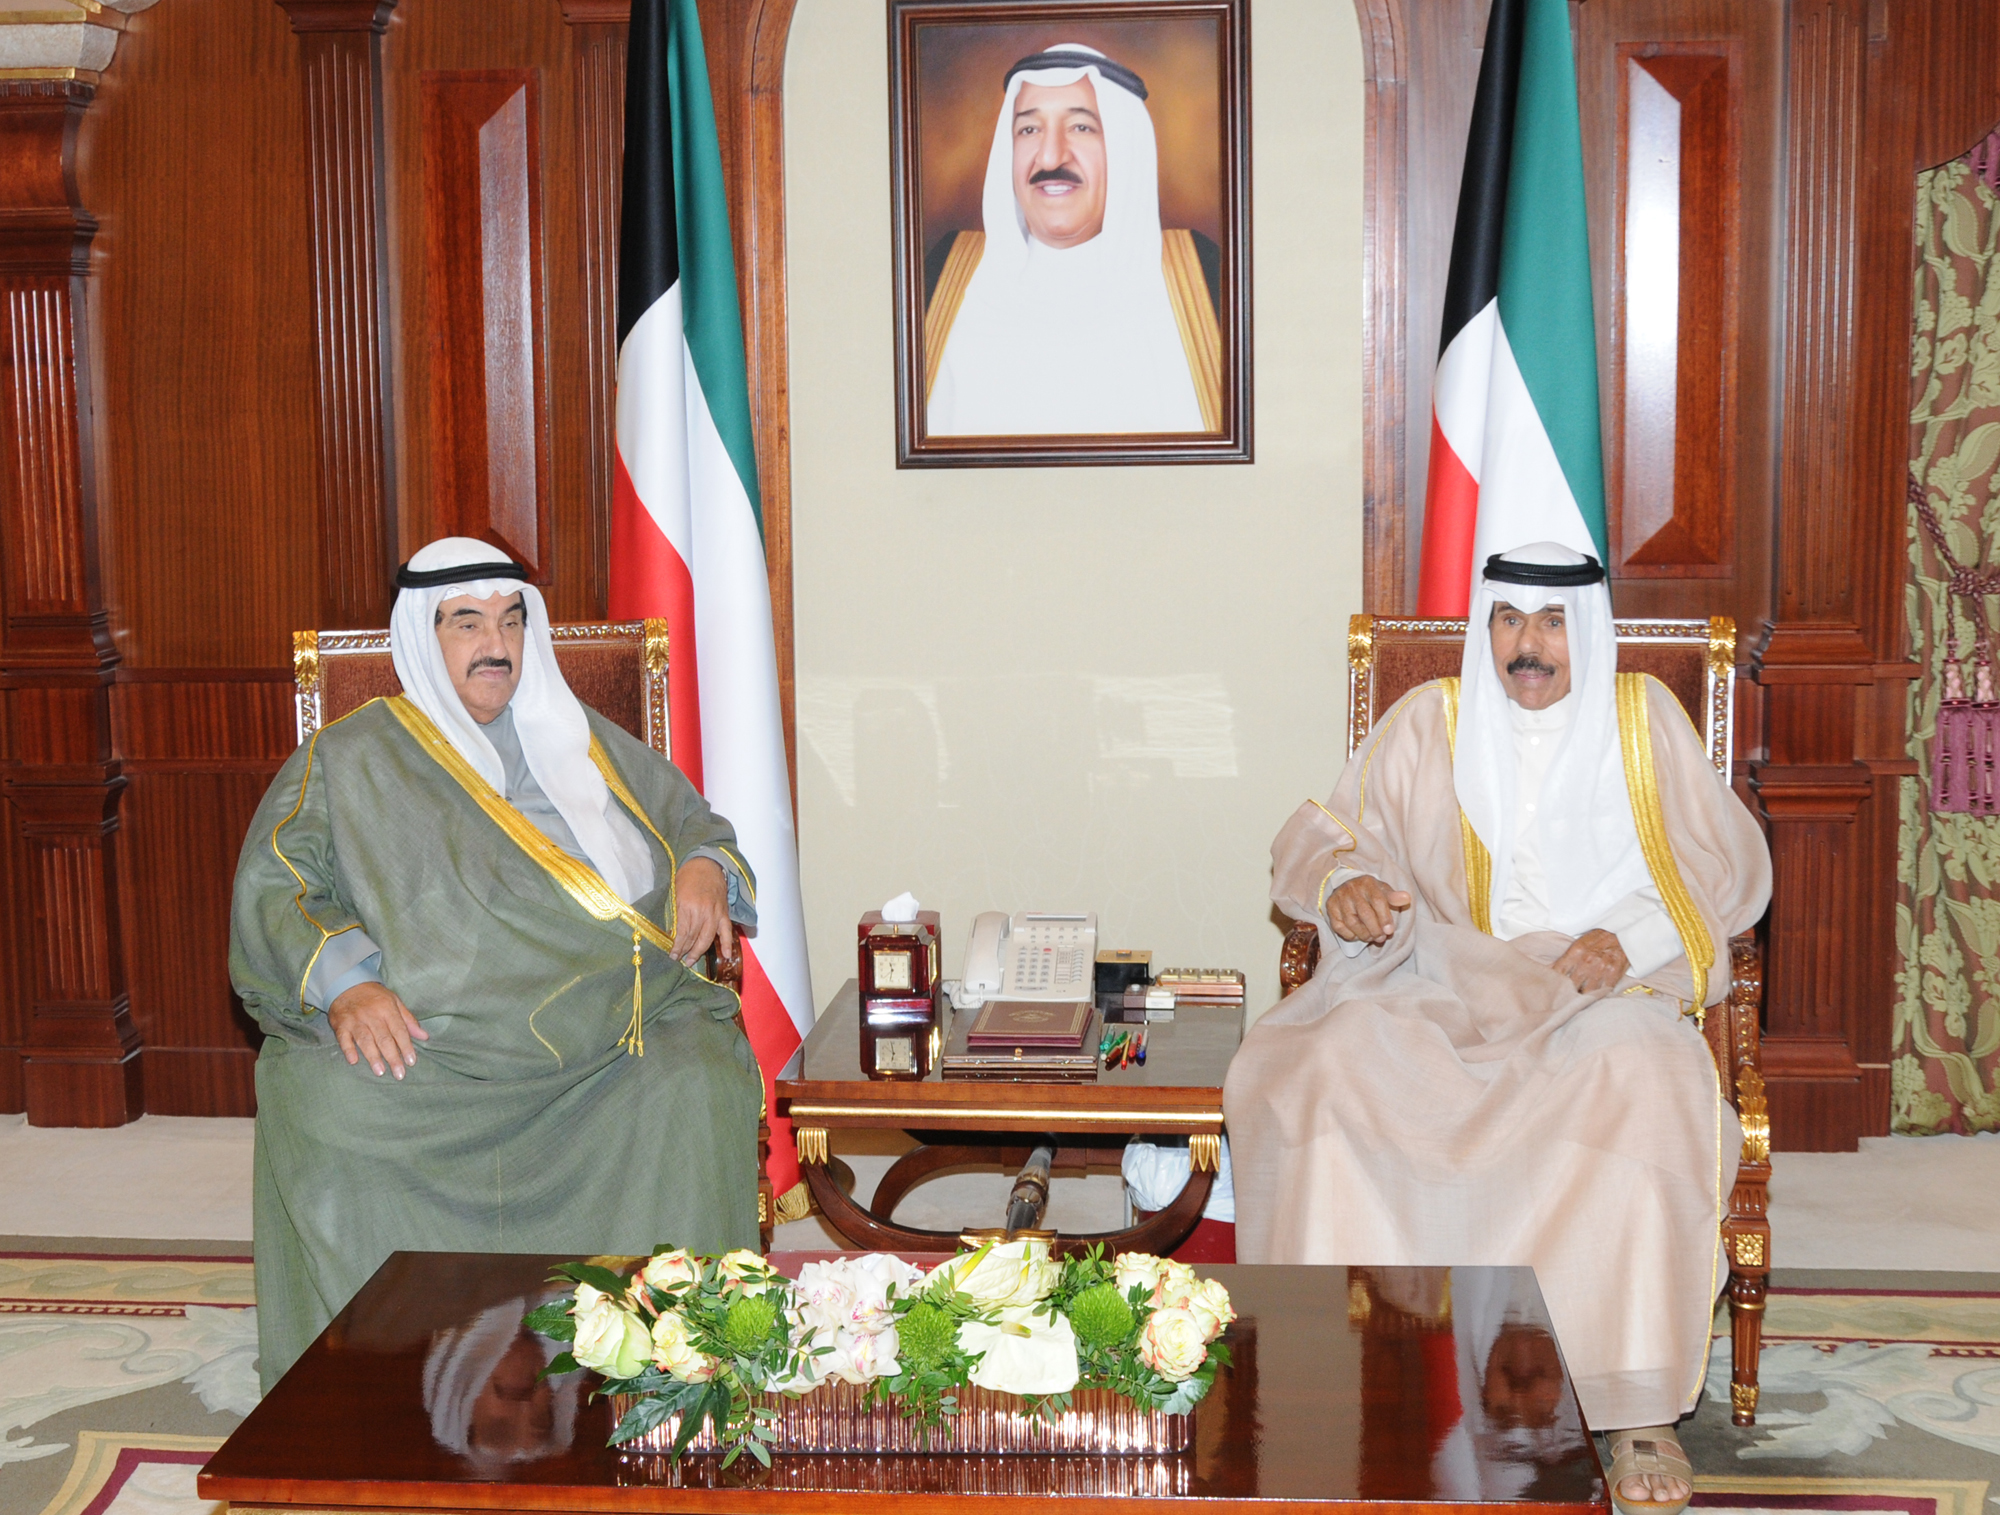 H.H. the Crown Prince receives H.H. Sheikh Nasser Al-Mohammad Al-Ahmad Al-Sabah